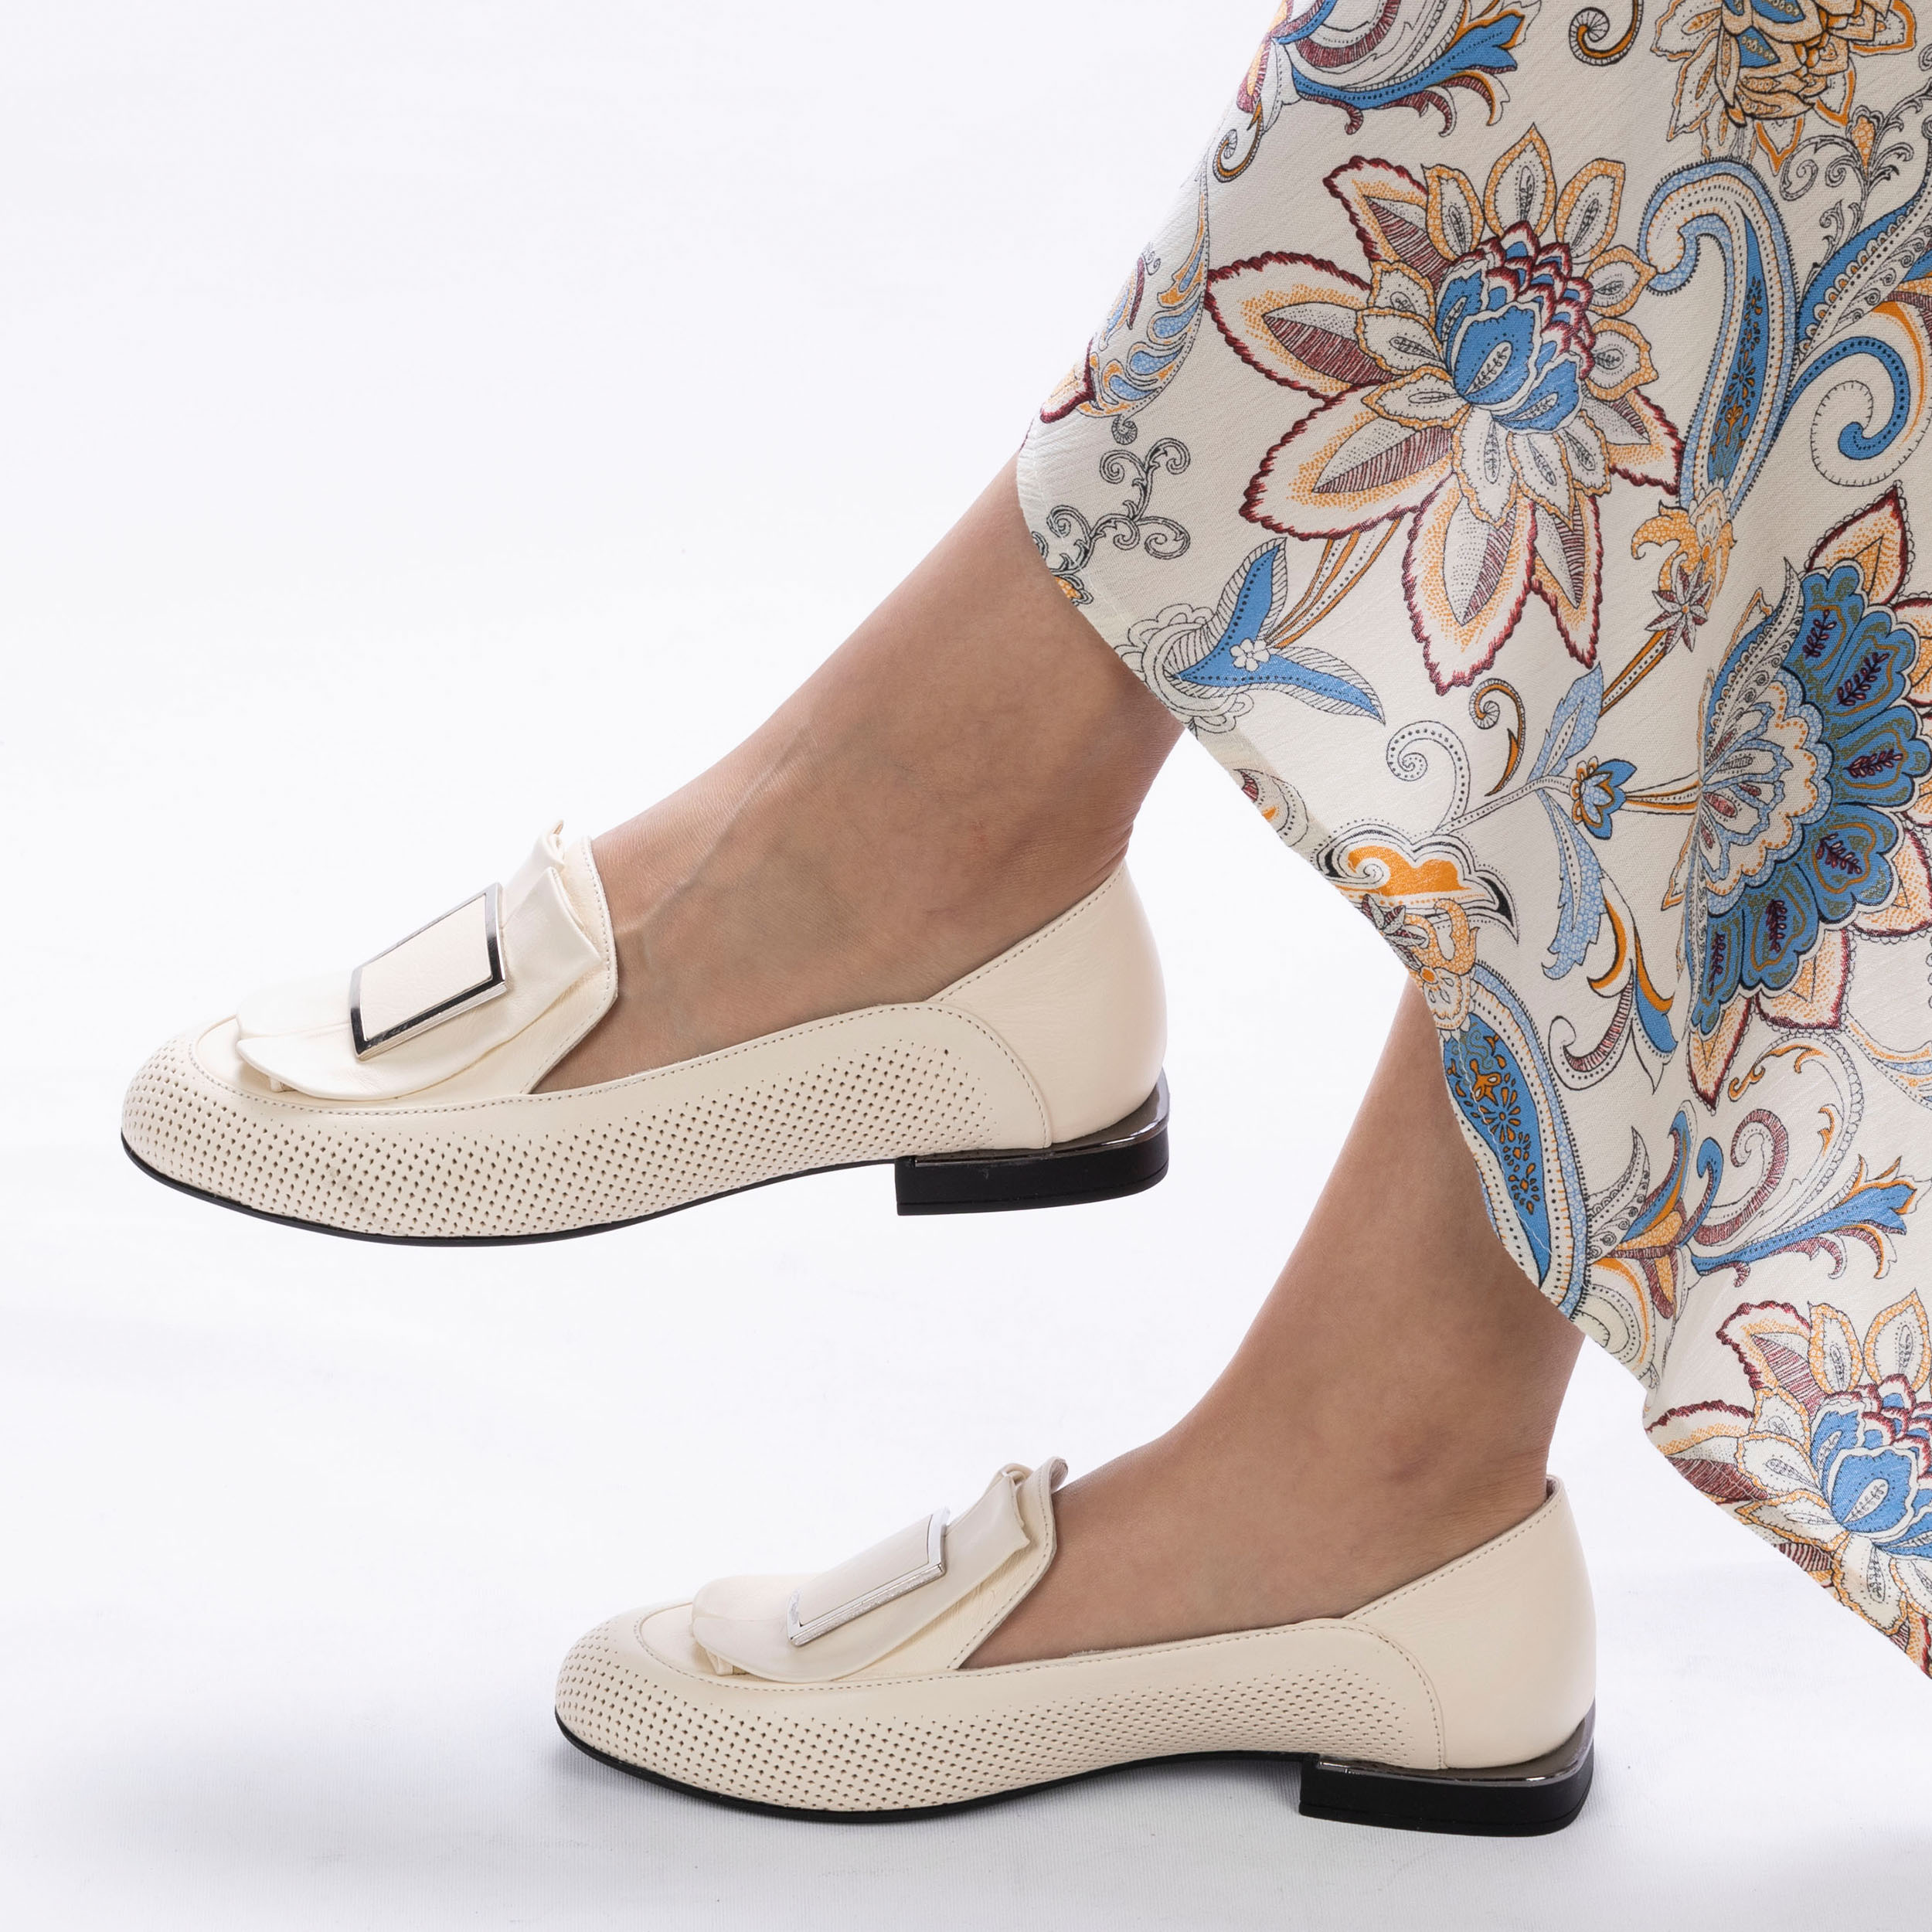 TwoEgoist Kadın Hakiki Deri Şık Tasarım Günlük Klasik Loafer - Babet Ayakkabı, Renk: Bej, Beden: 37